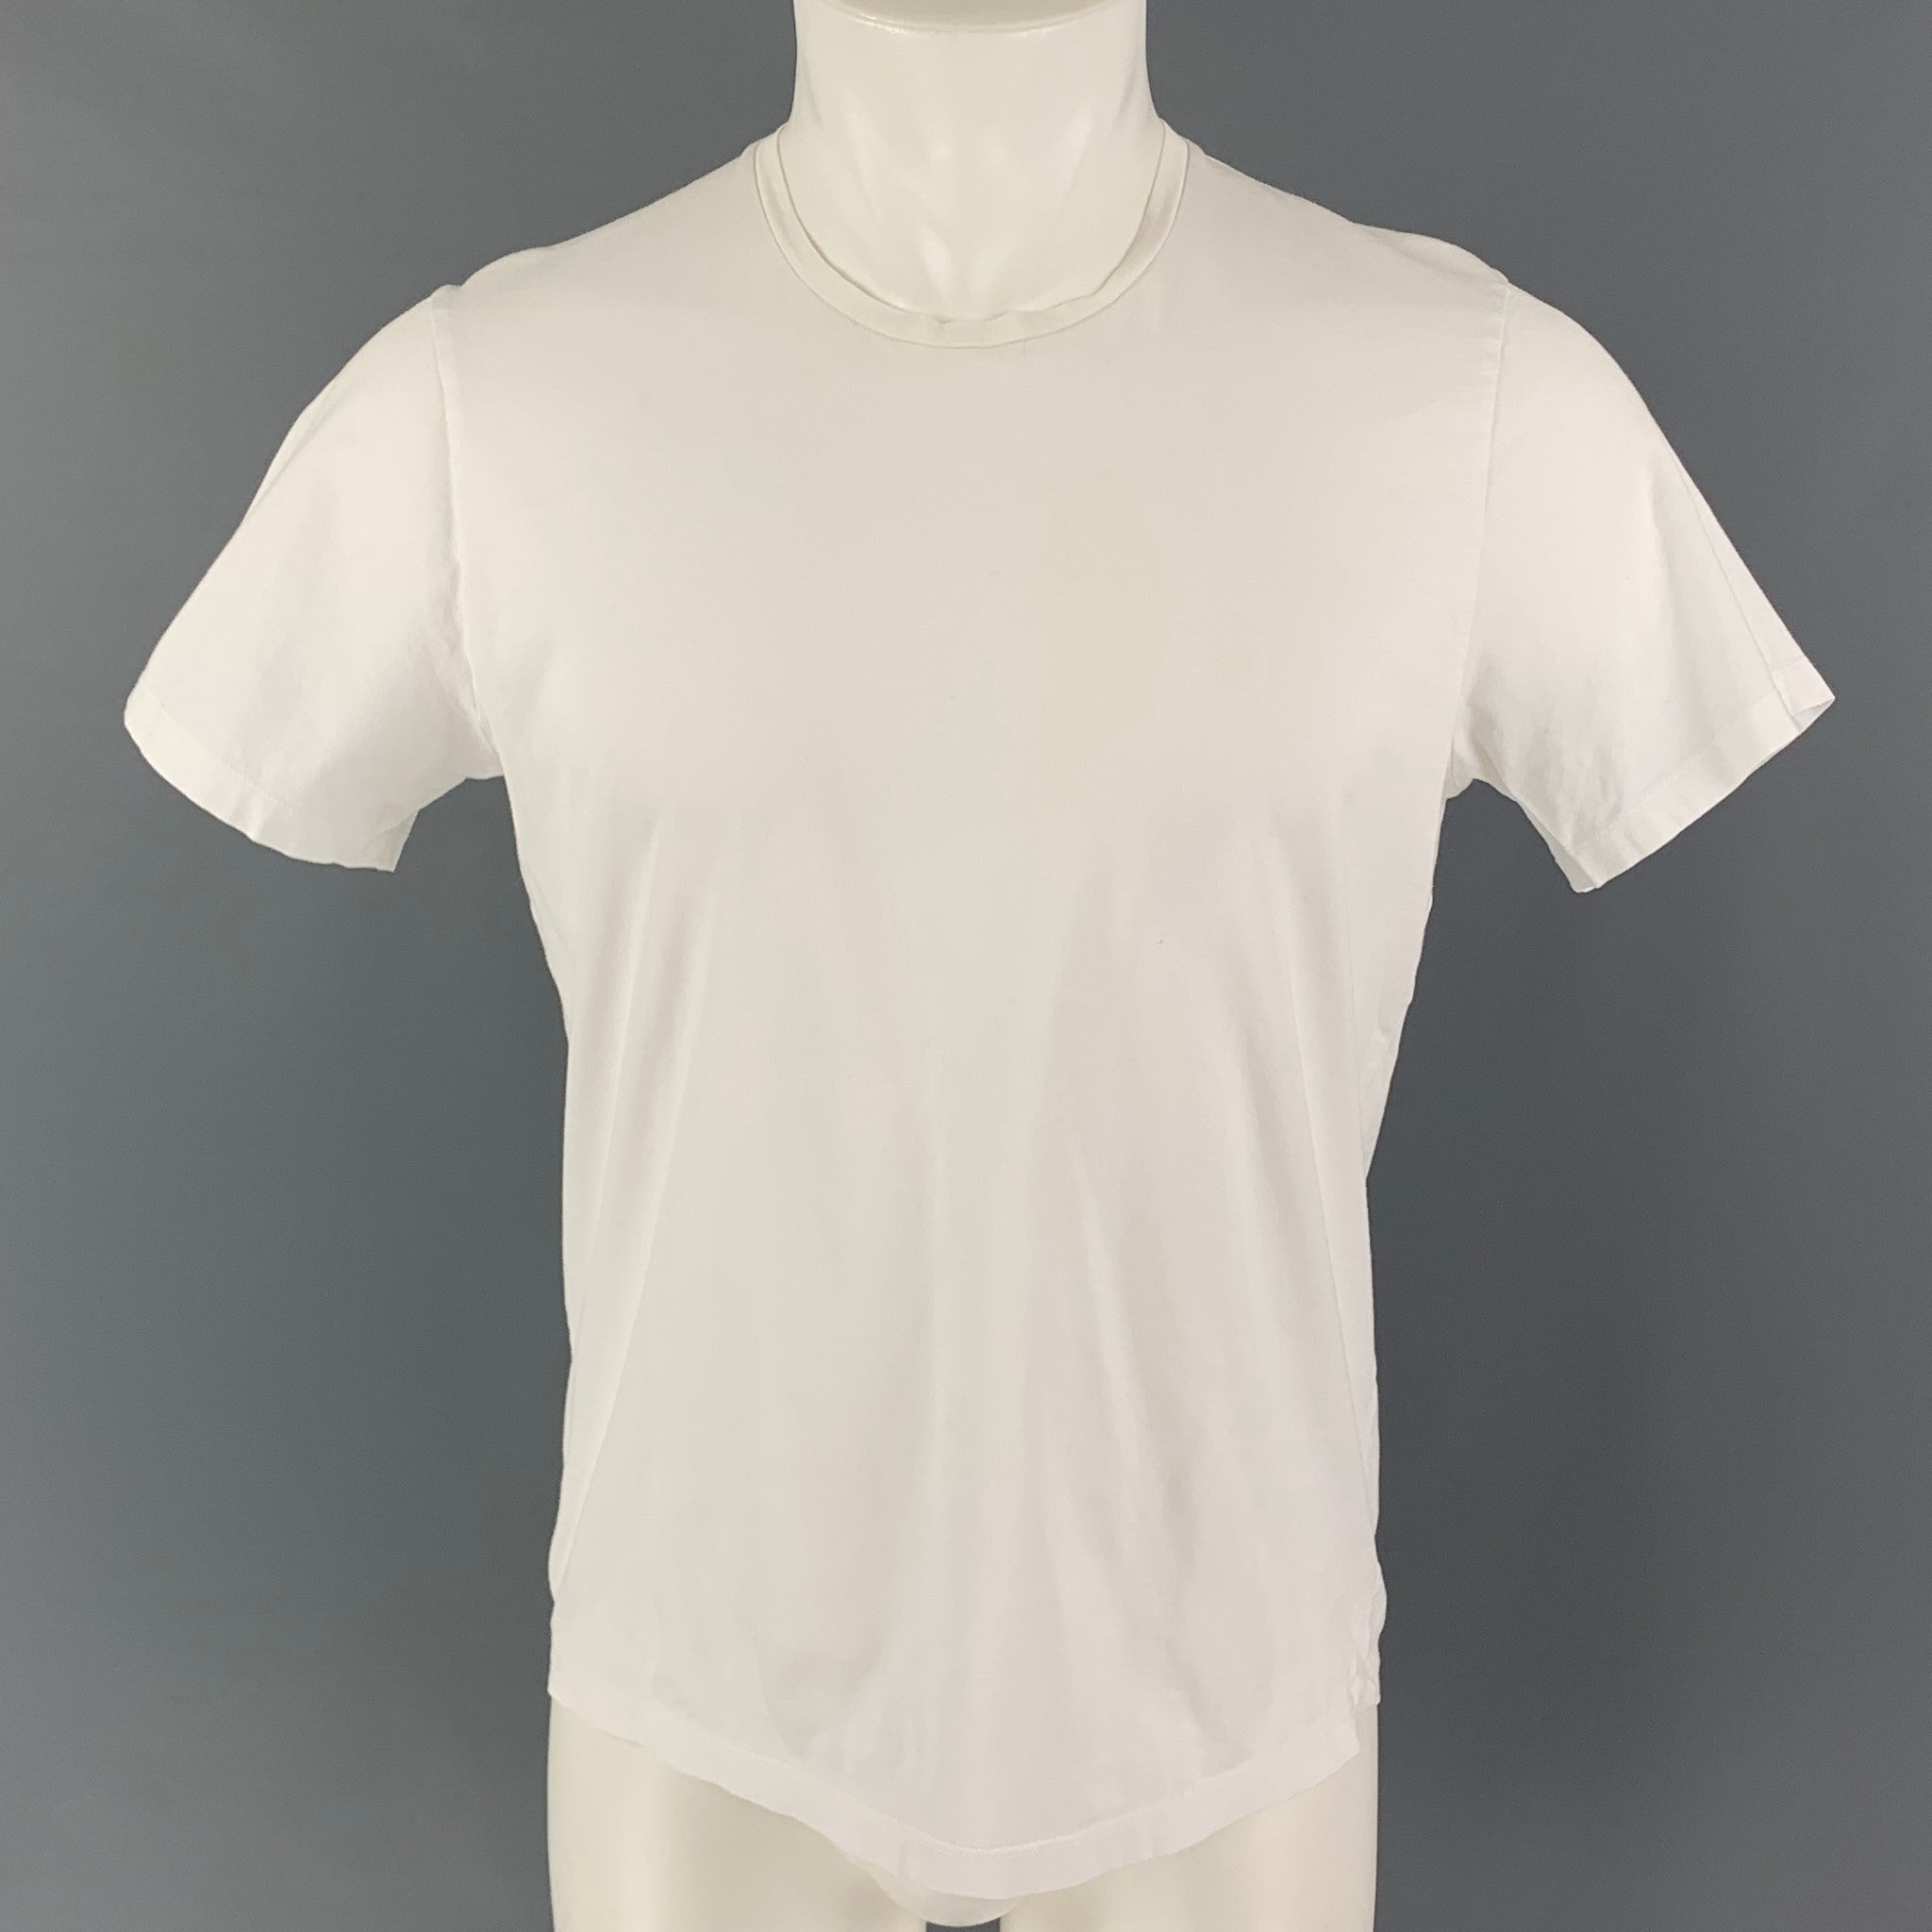 Louis Vuitton - Authenticated Jean - Cotton White Plain for Men, Good Condition